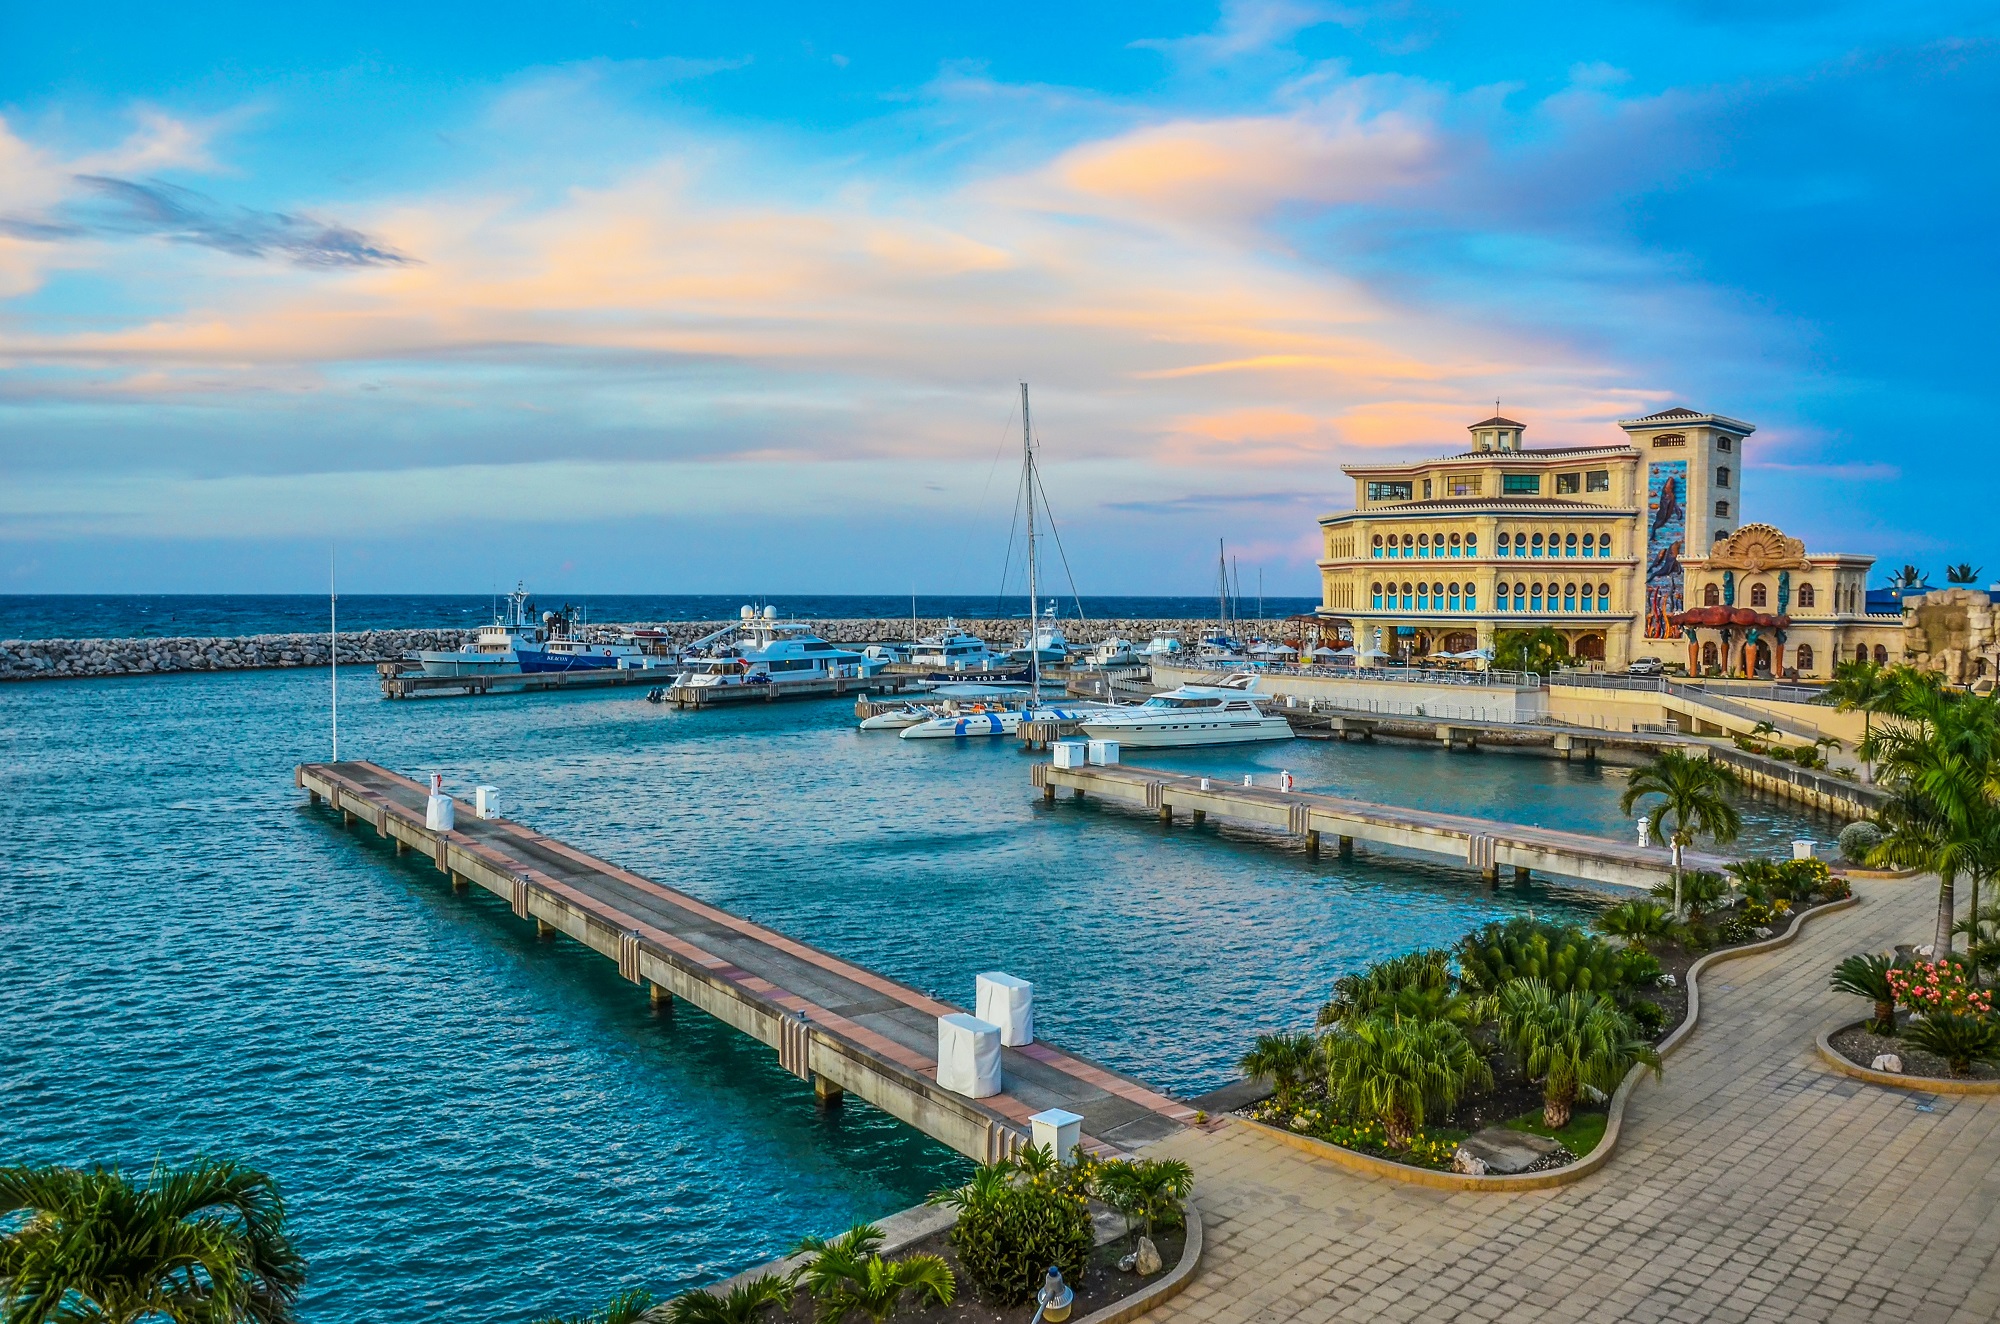 puerto plata - all-inclusive resorts - Dominican Republic